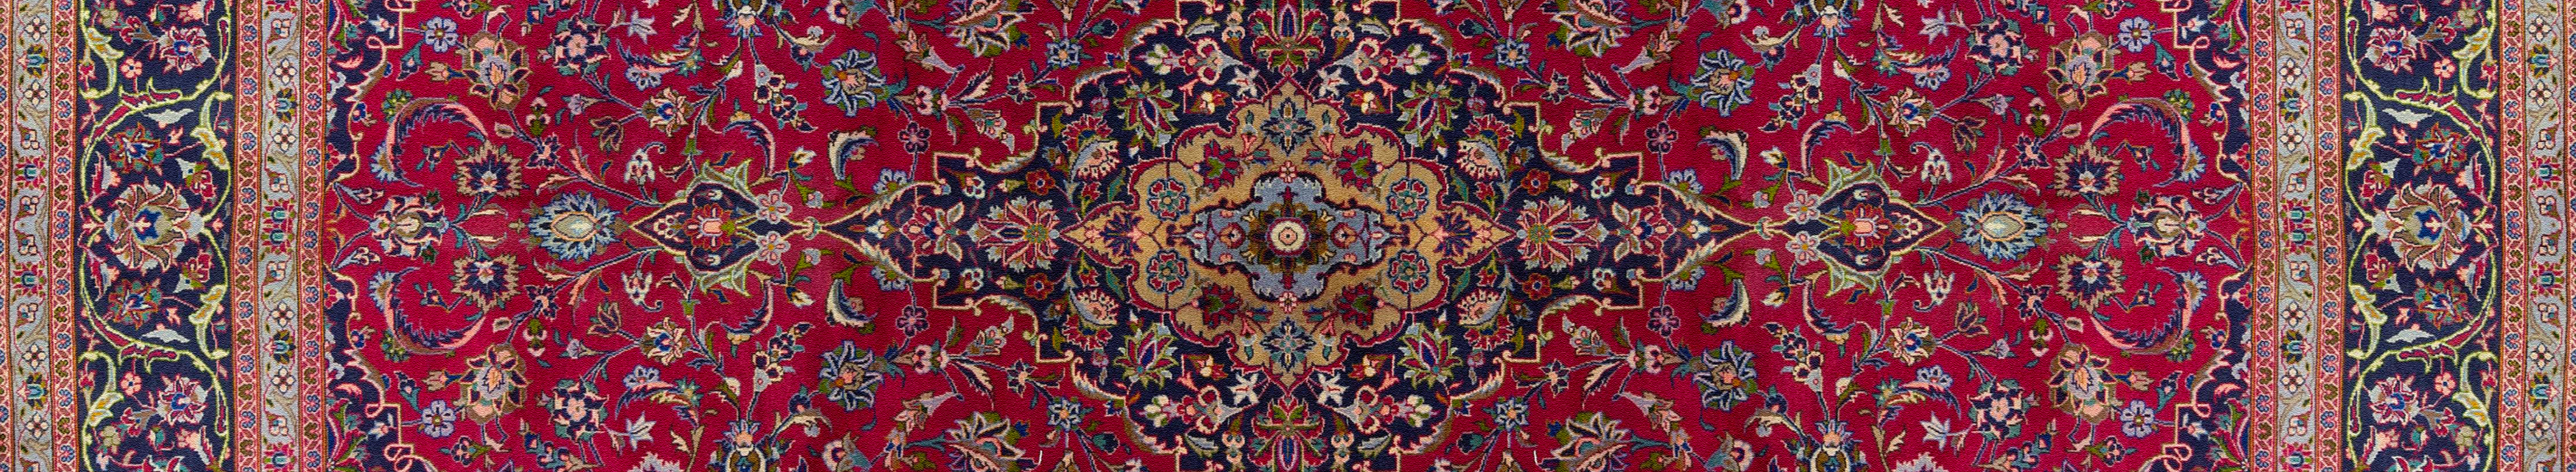 Carpet Pattern 5900x1080